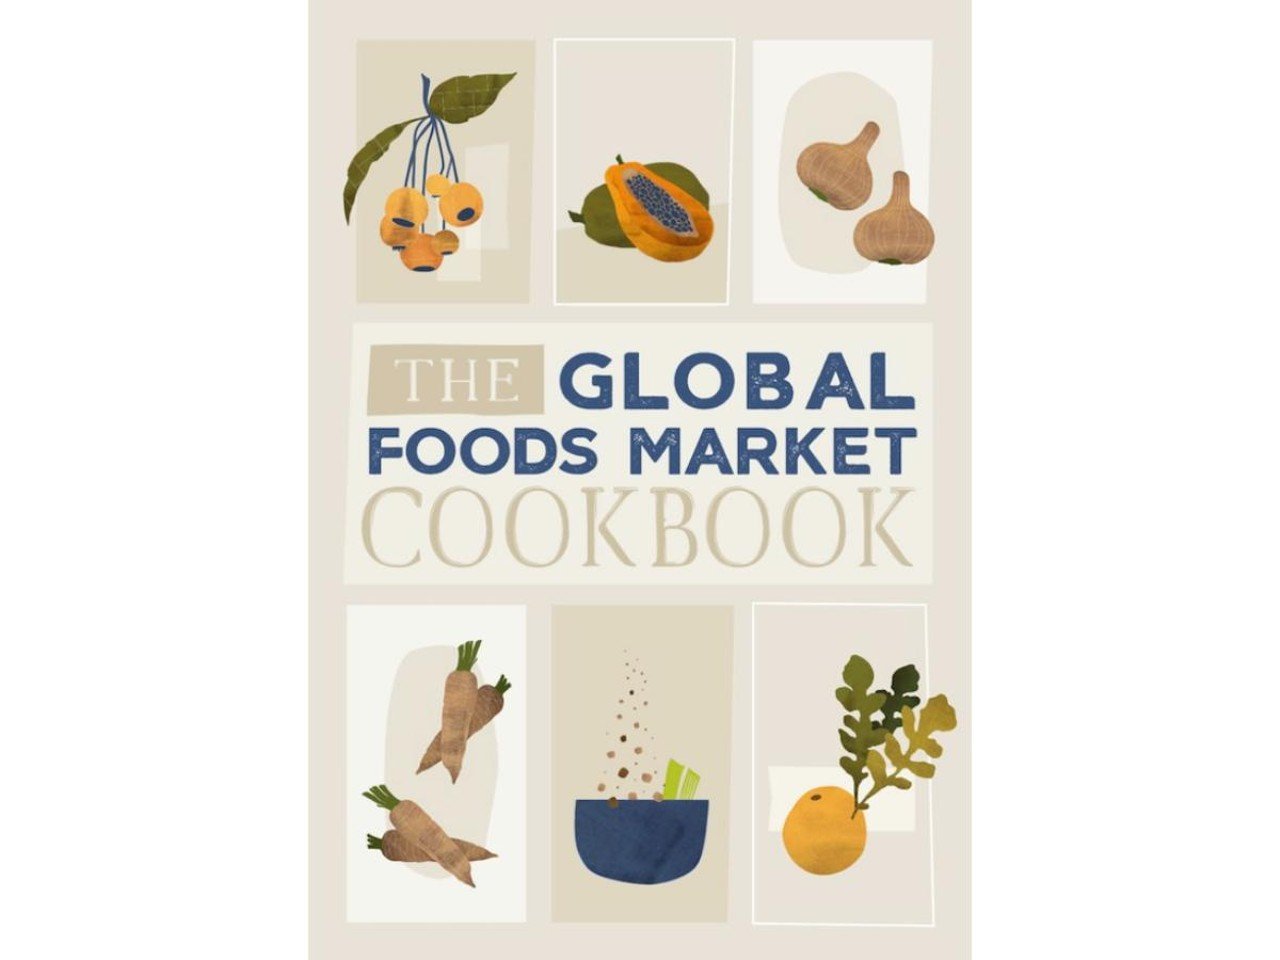 The Global Foods Market Cookbook